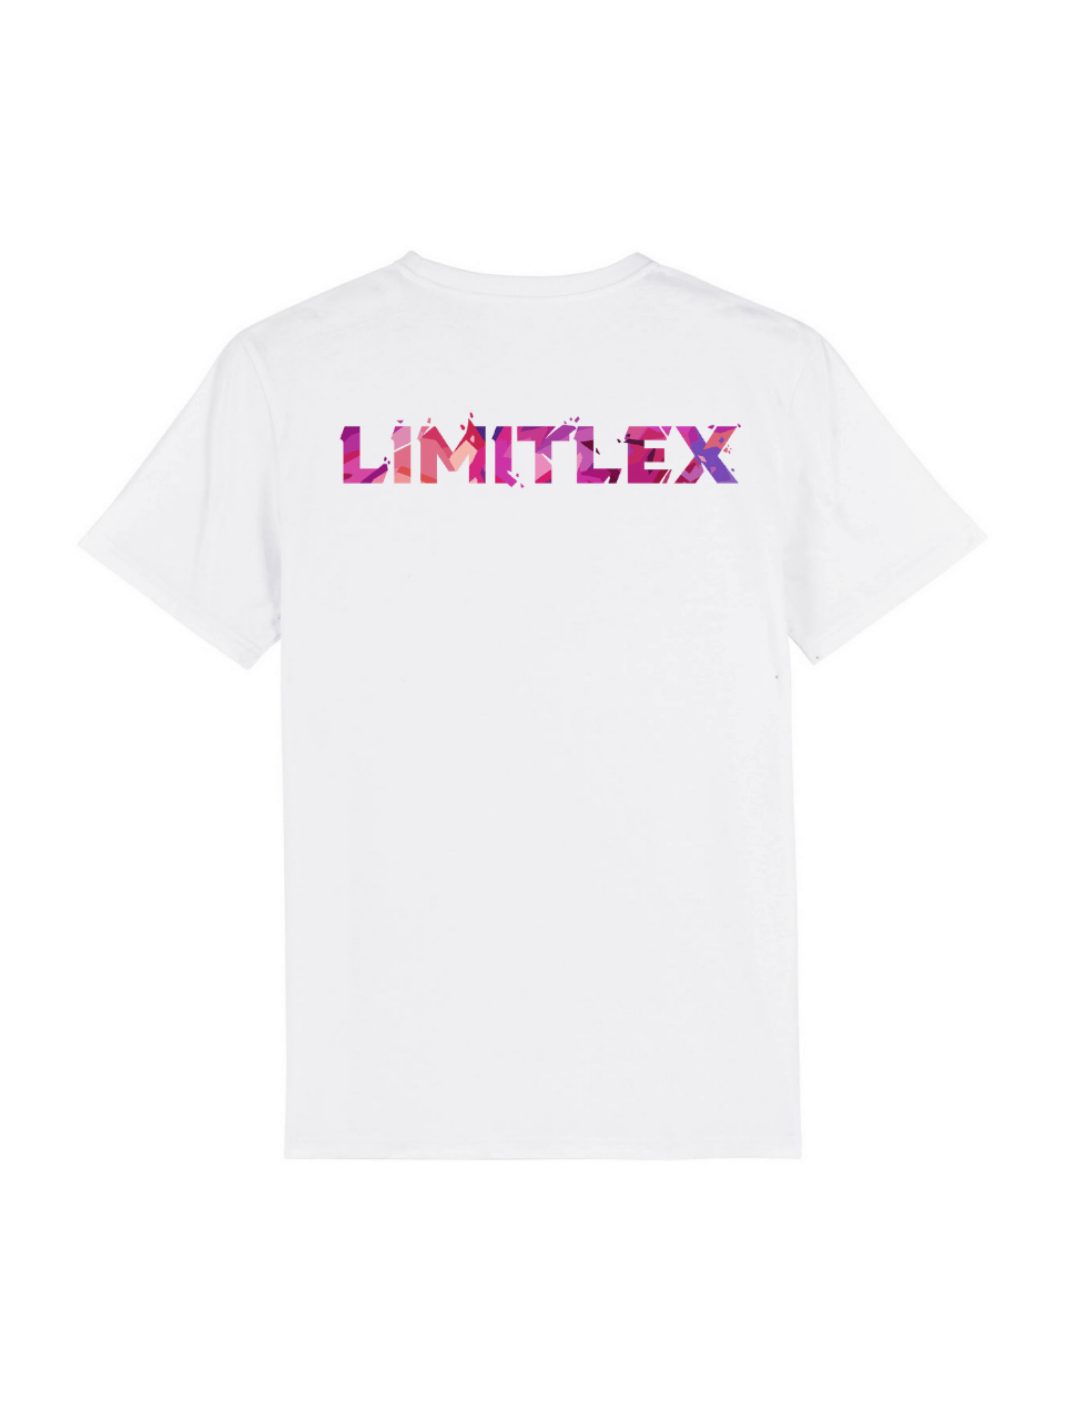 T-shirt essential Limitlex bianca con scritta sul retro.